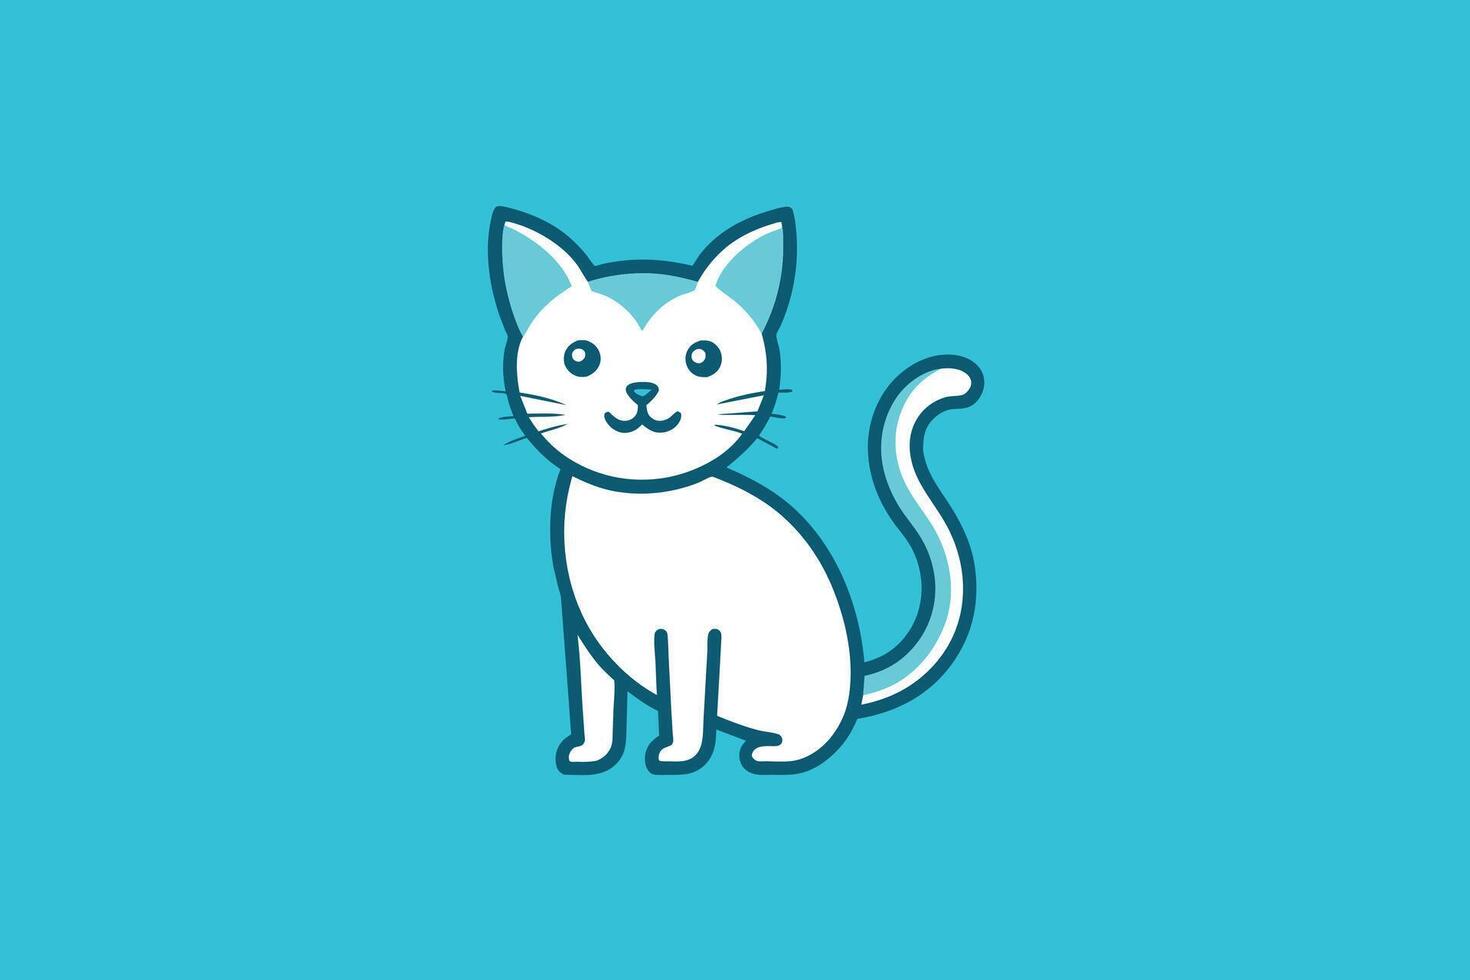 vetor de modelo de design de ícone de ilustração de arte de linha de gato fofo